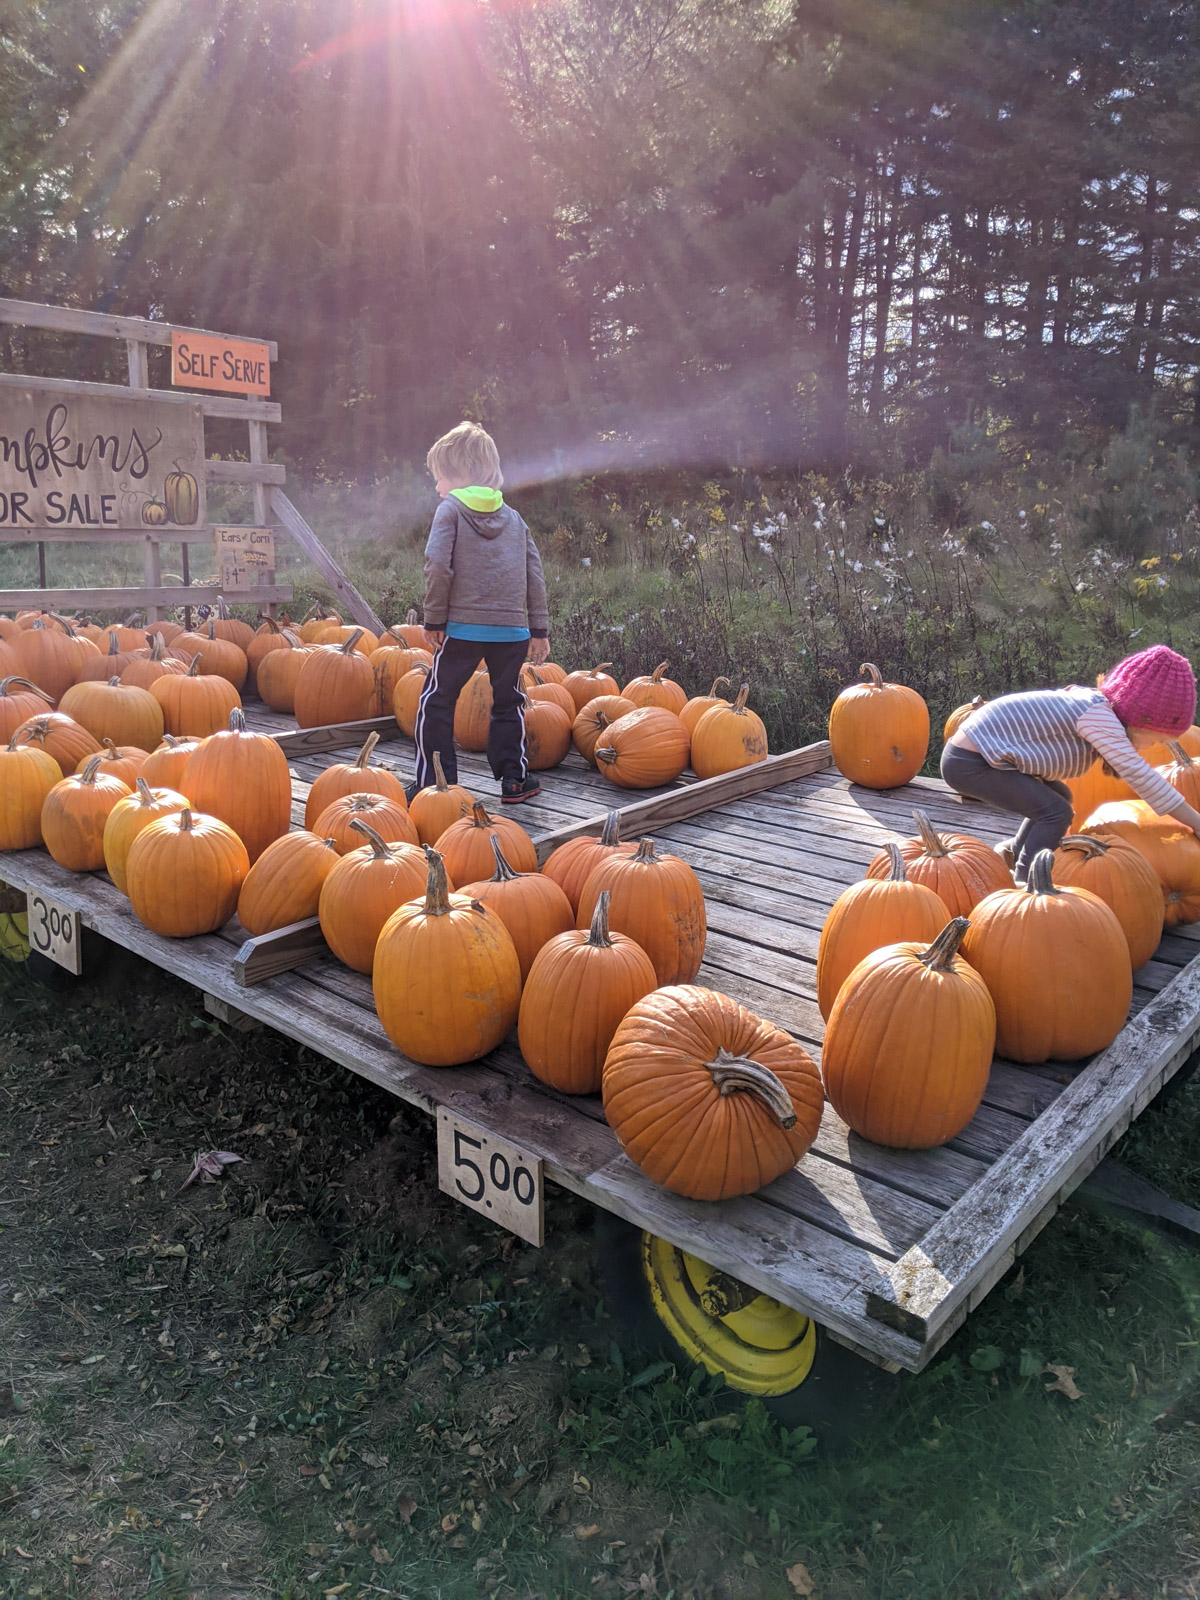 Kids selecting a pumpkin from a large pumpkin patch truck.